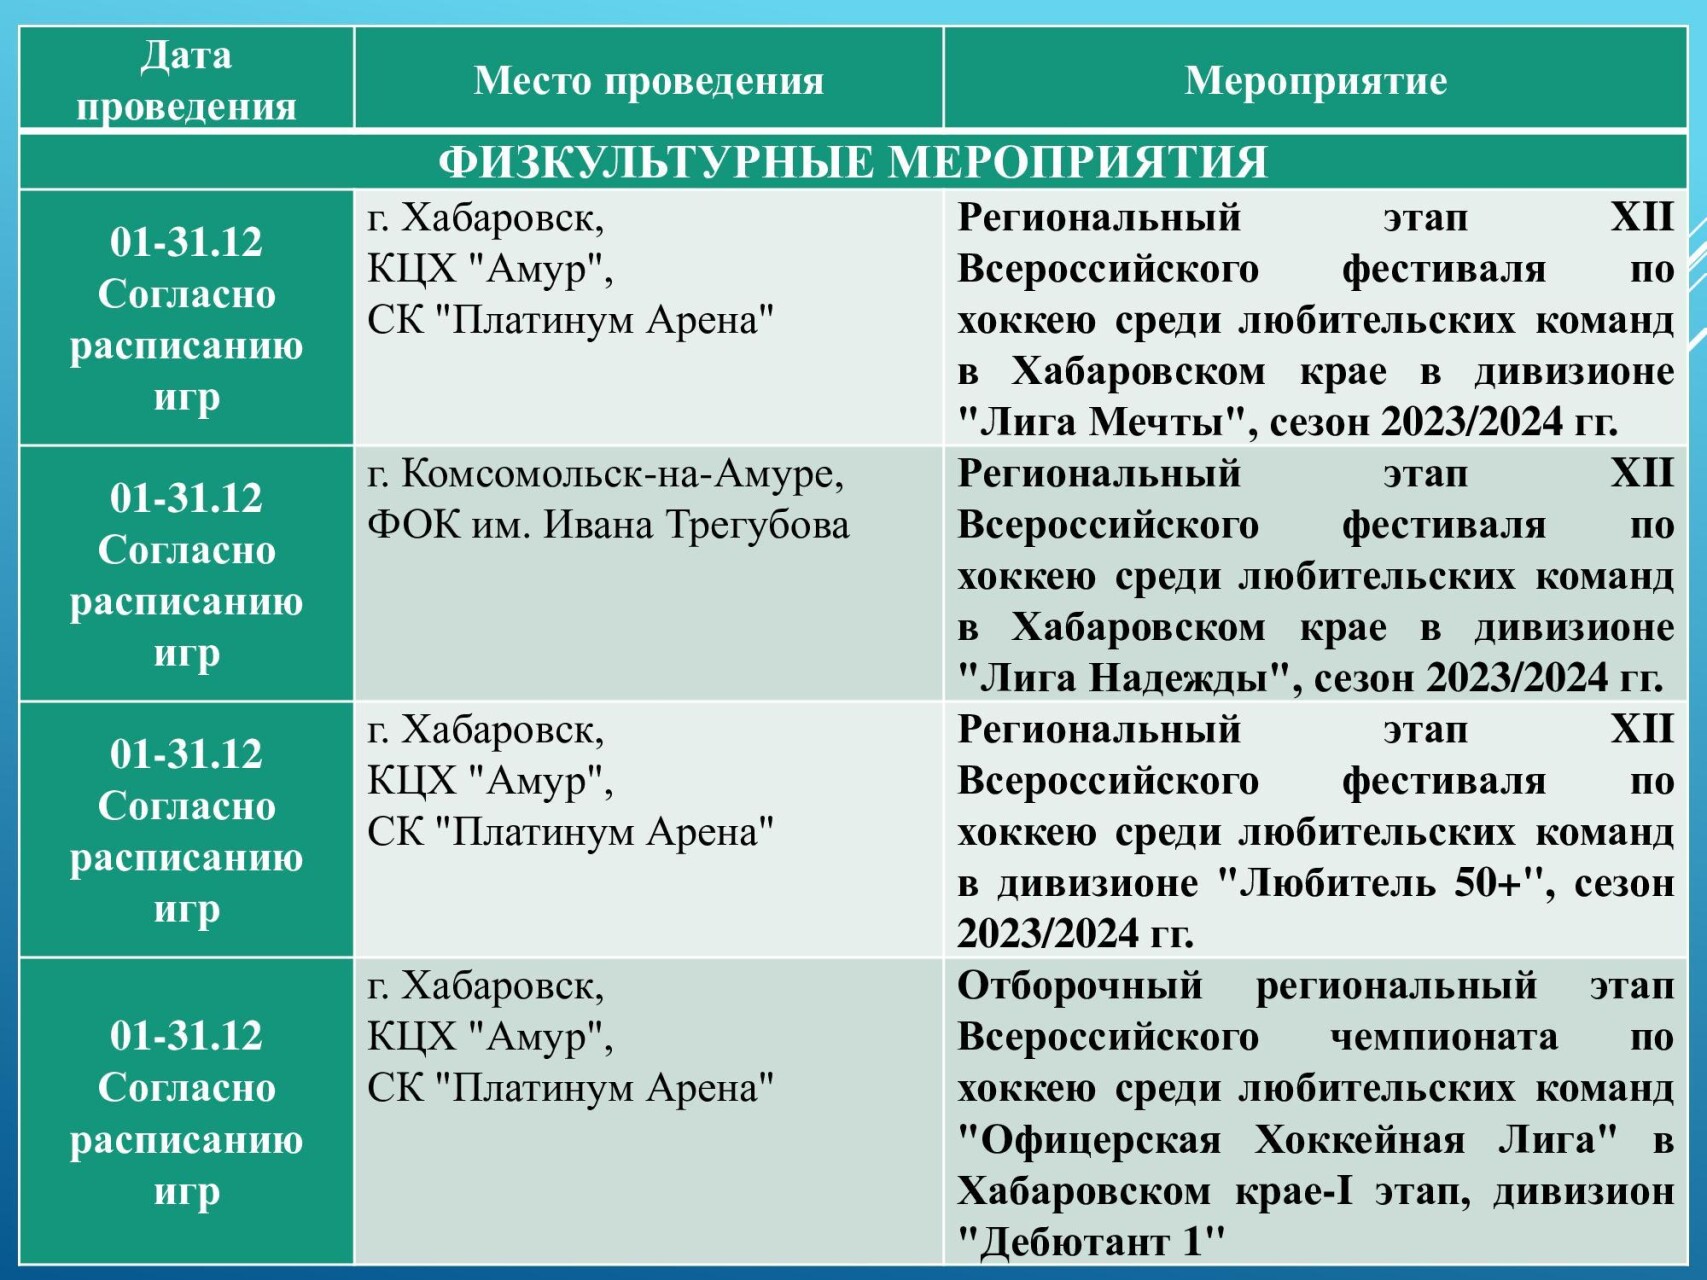 Анонс физкультурных и спортивных мероприятий в крае с 04 по 10 декабря